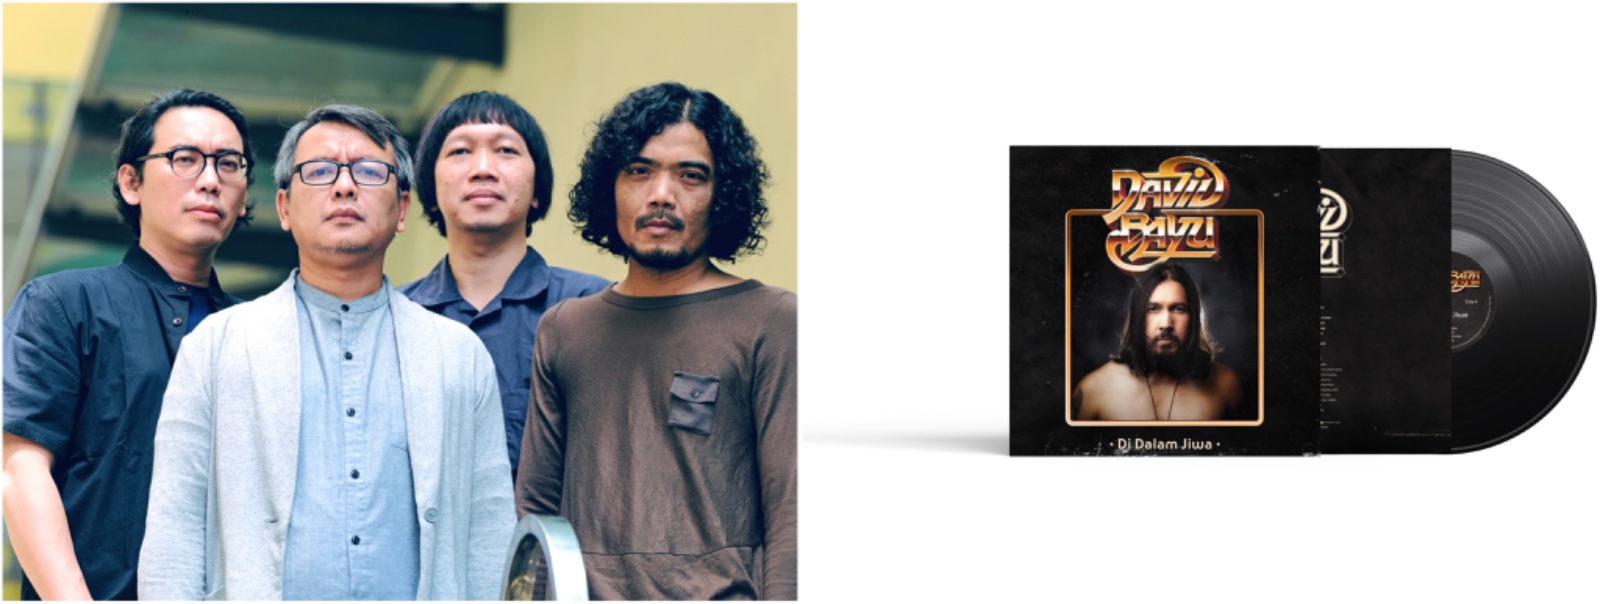 Cara pre-order vinyl di Demajors, ada album Indra Lesmana sampai Efek Rumah Kaca